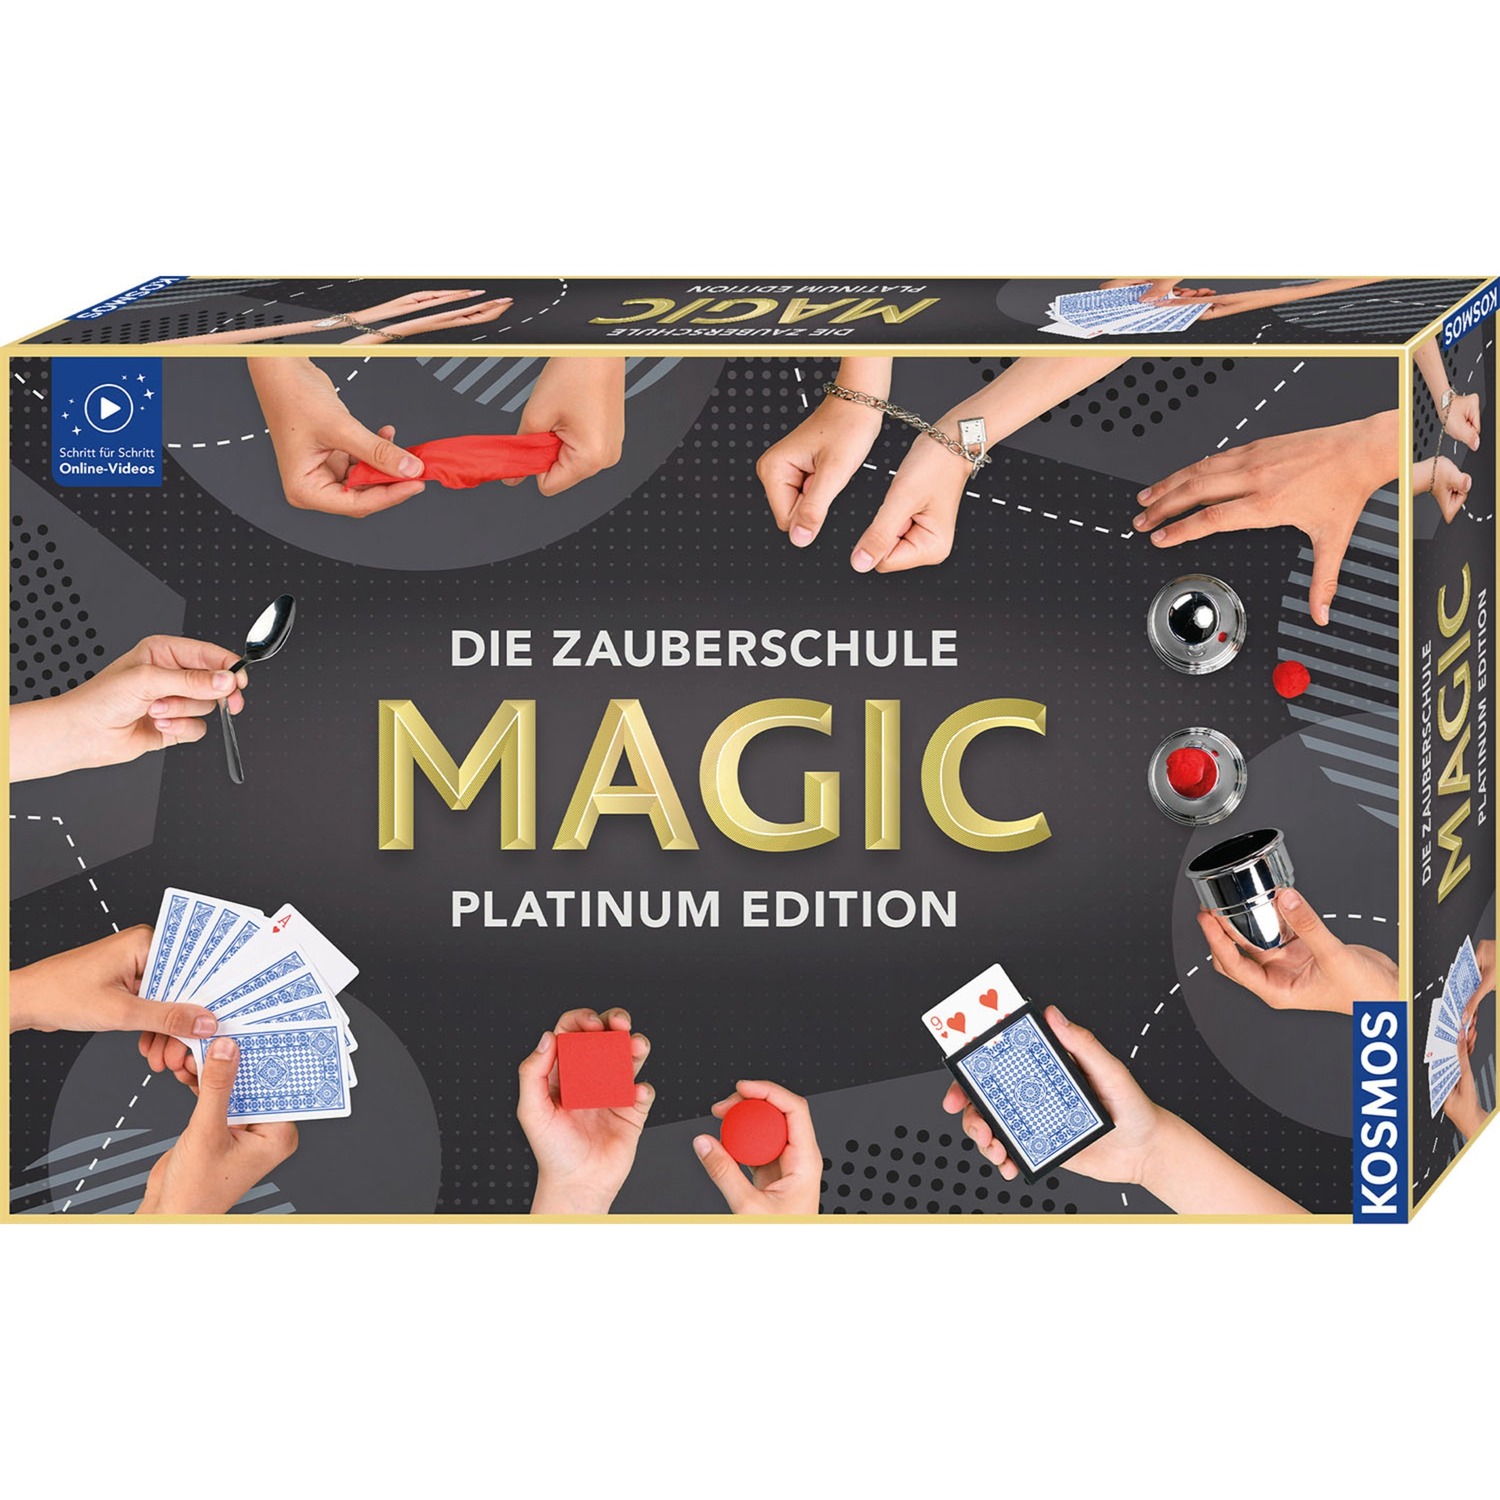 Die Zauberschule Magic - Platinum Edition, Zauberkasten von Kosmos